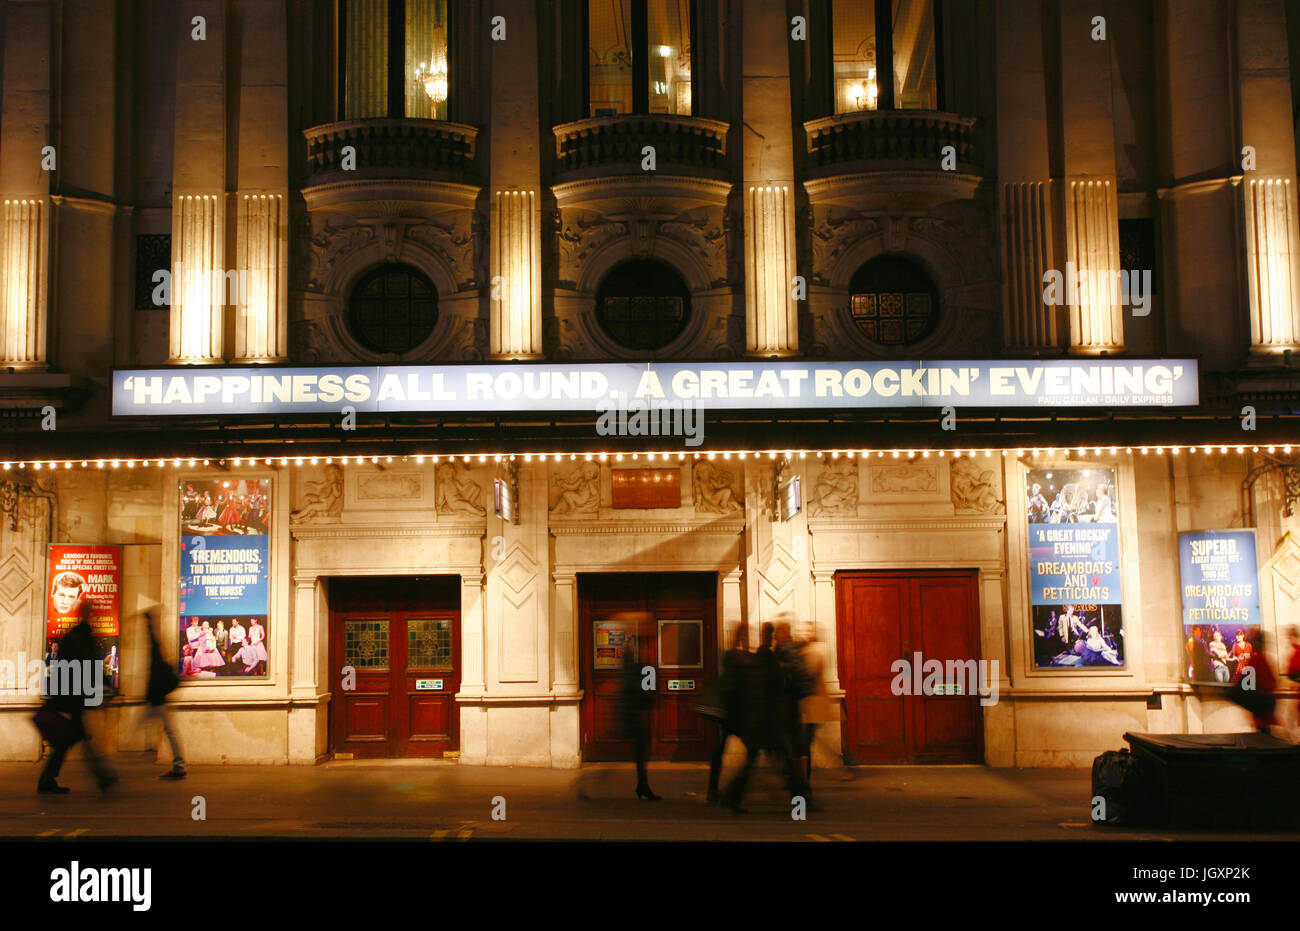 Londres, Reino Unido - 11 de diciembre de 2012: Vista exterior de Wyndham's Theatre, West End Theatre, ubicado en Charing Cross Road, la ciudad de Westminster desde 1899 Foto de stock